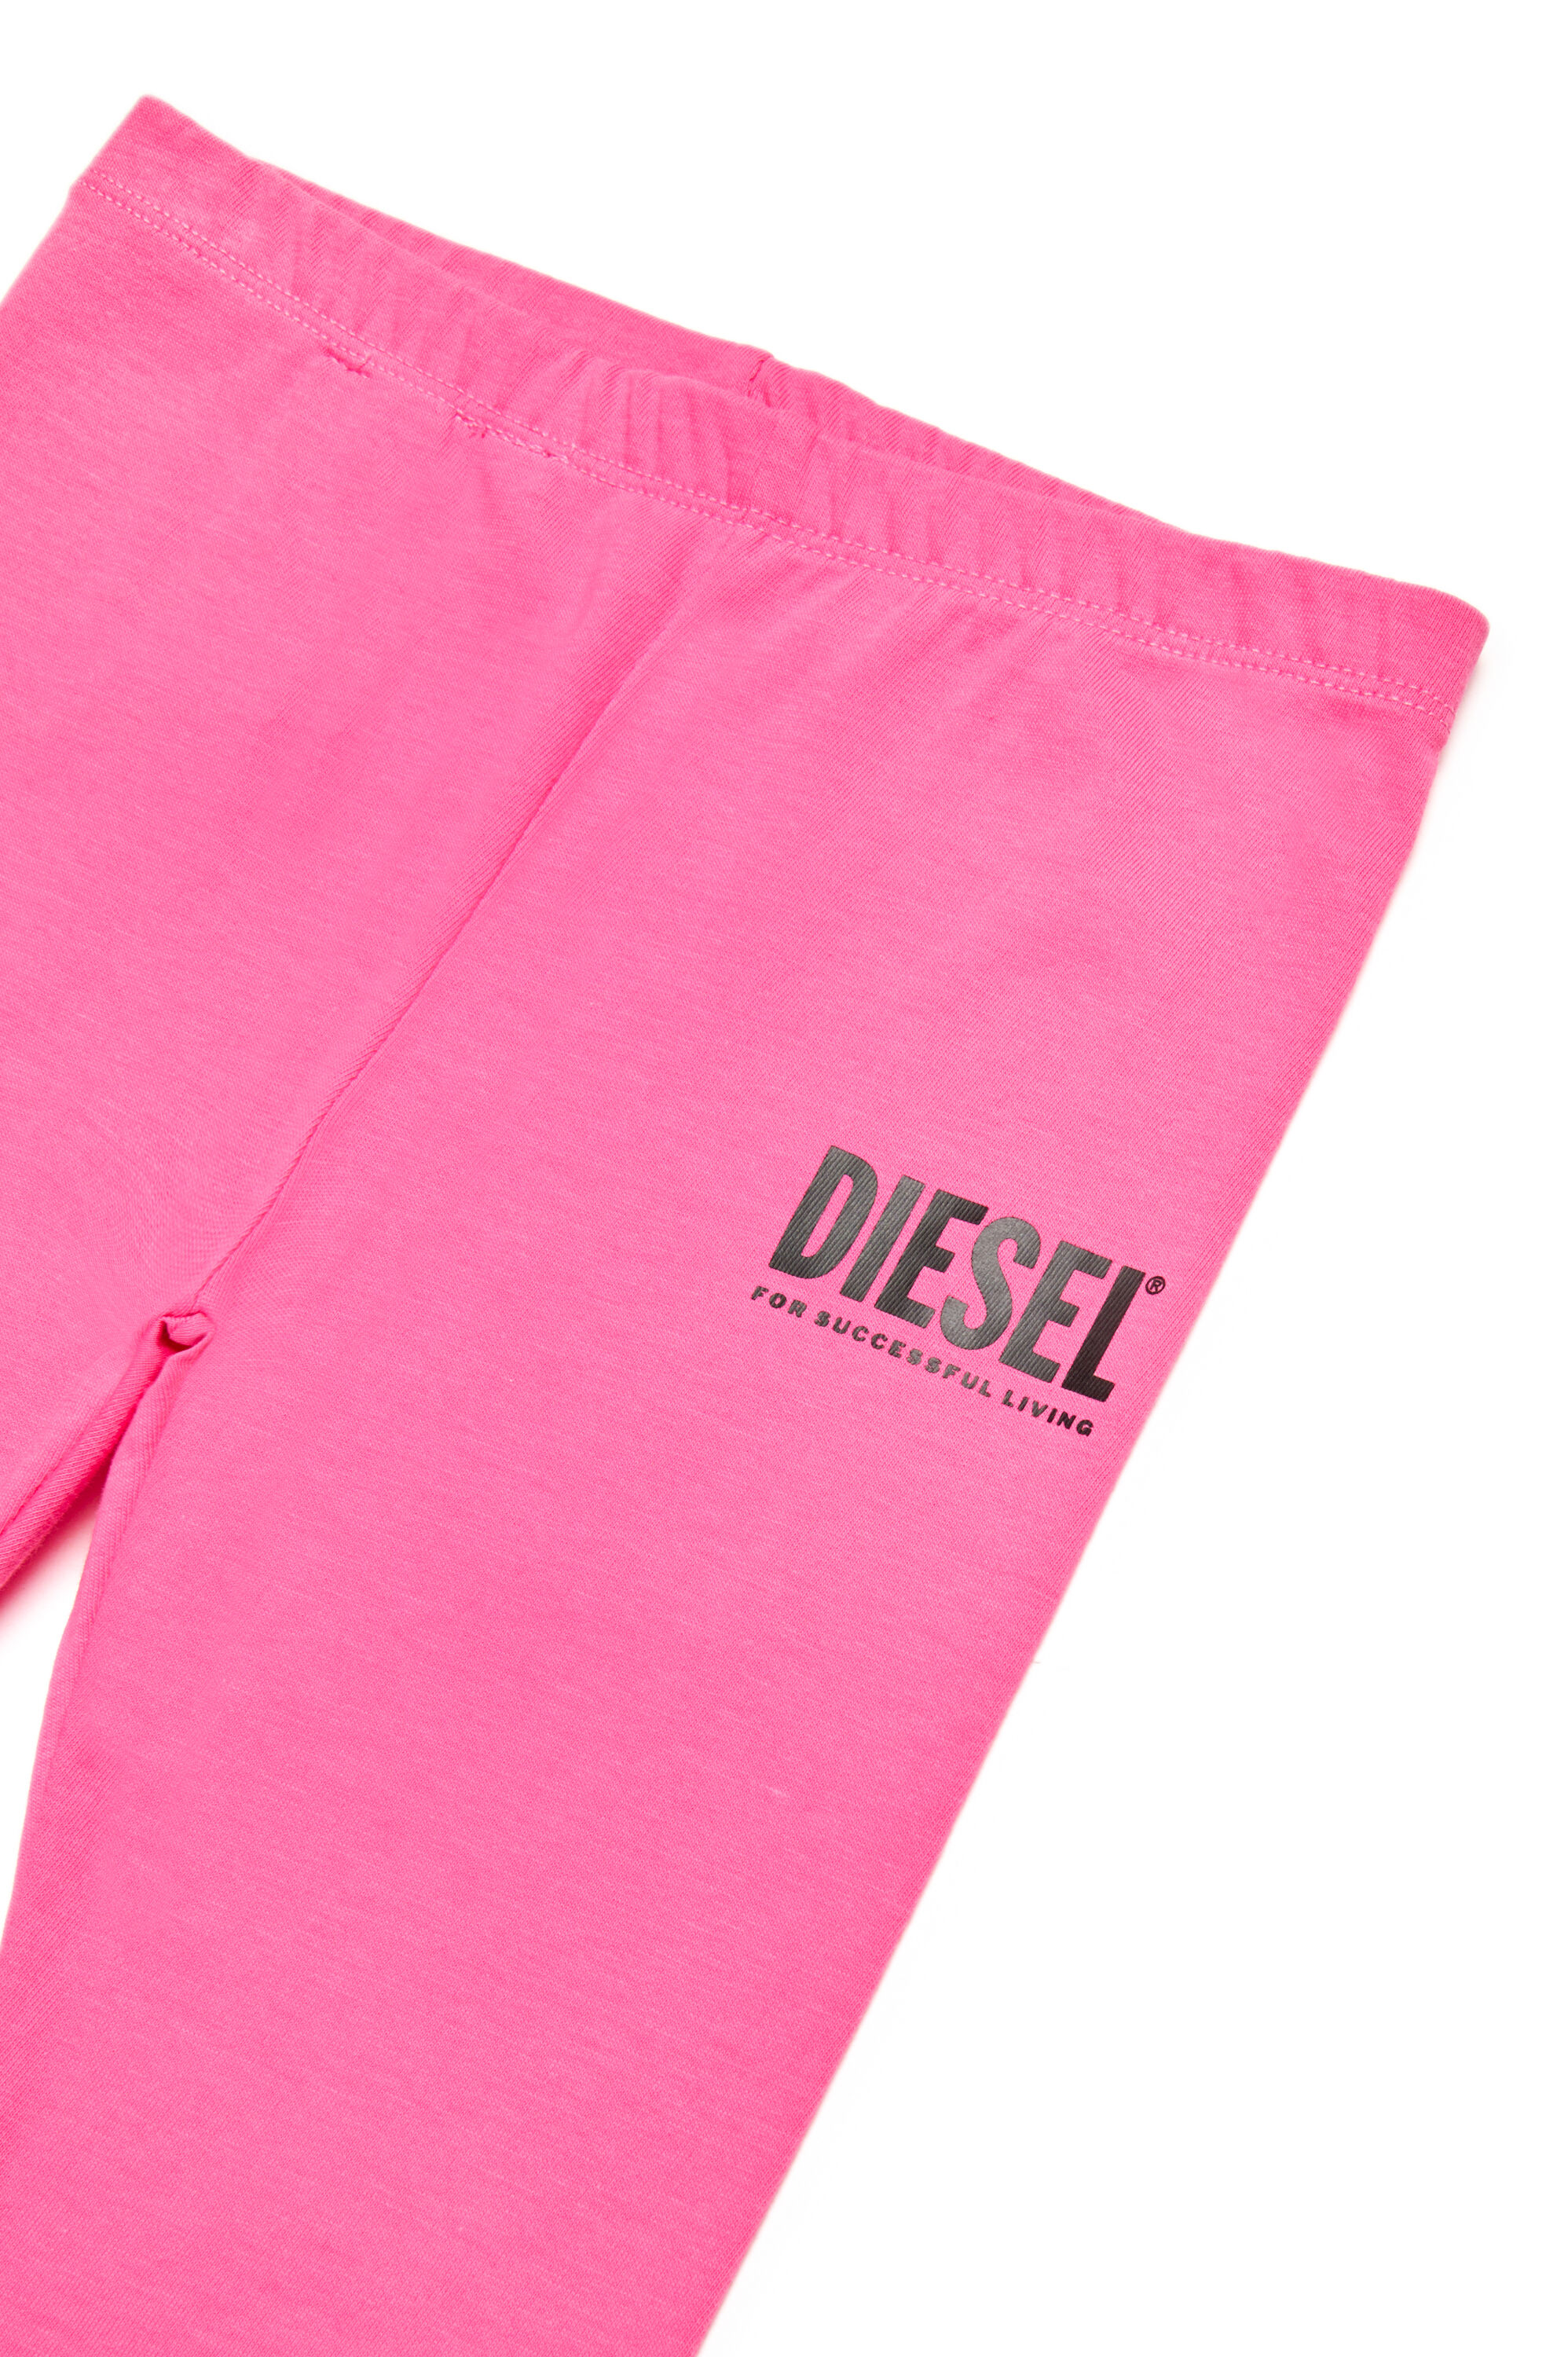 Diesel - PANB, Pink - Image 3